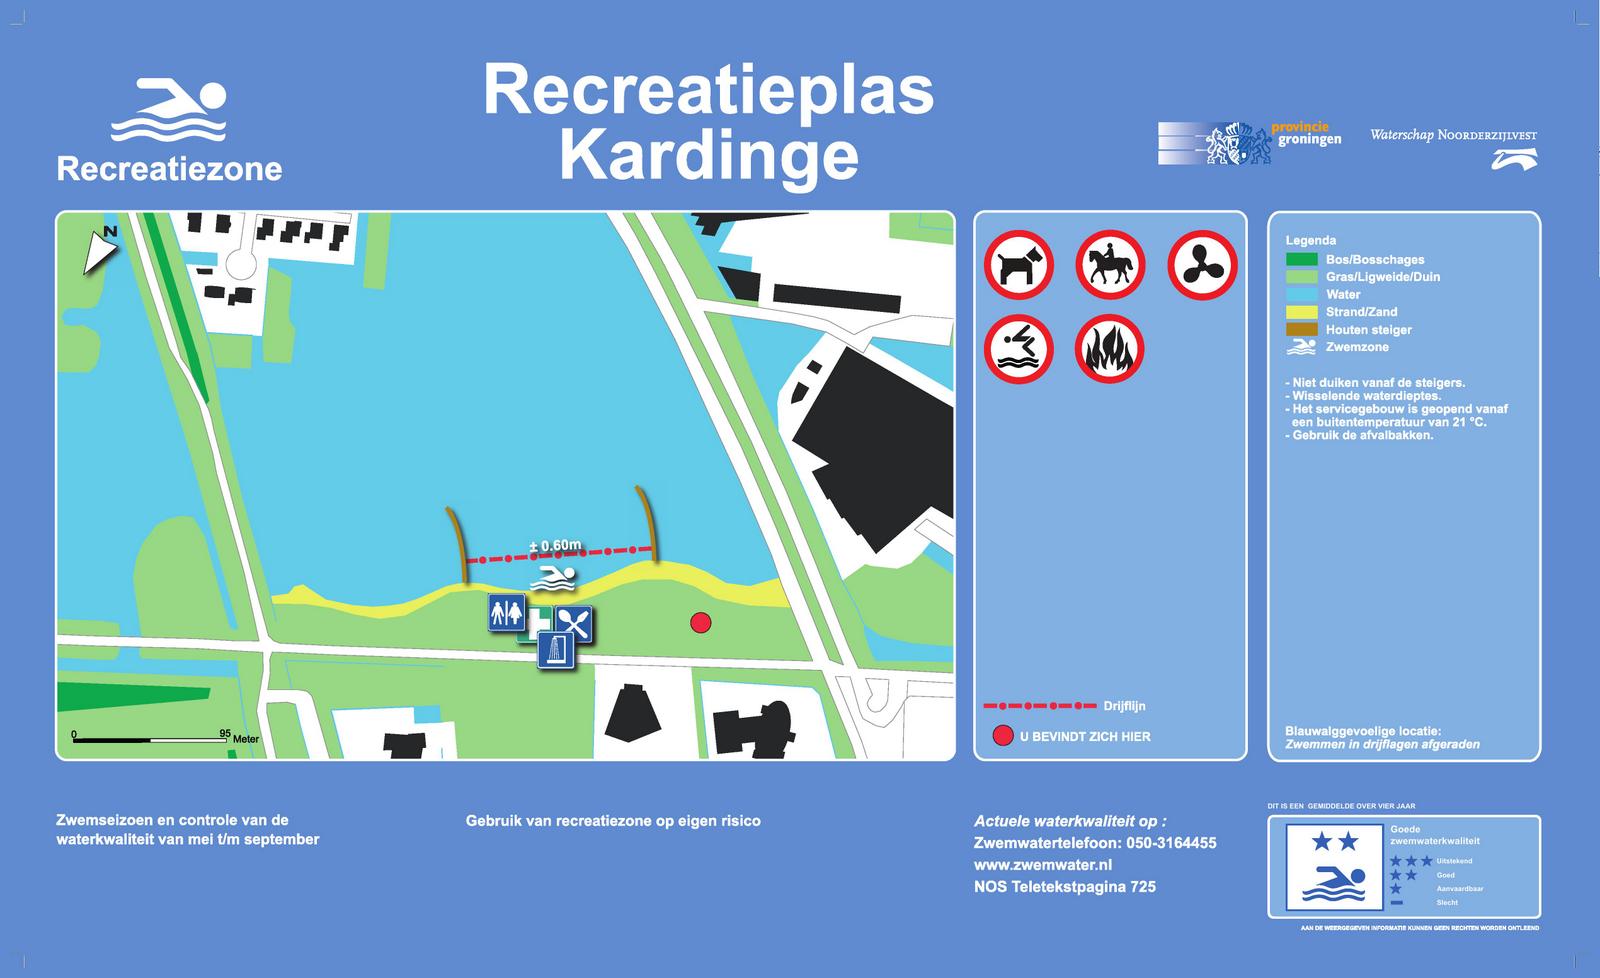 Het informatiebord bij zwemlocatie Recreatieplas Kardinge, Groningen